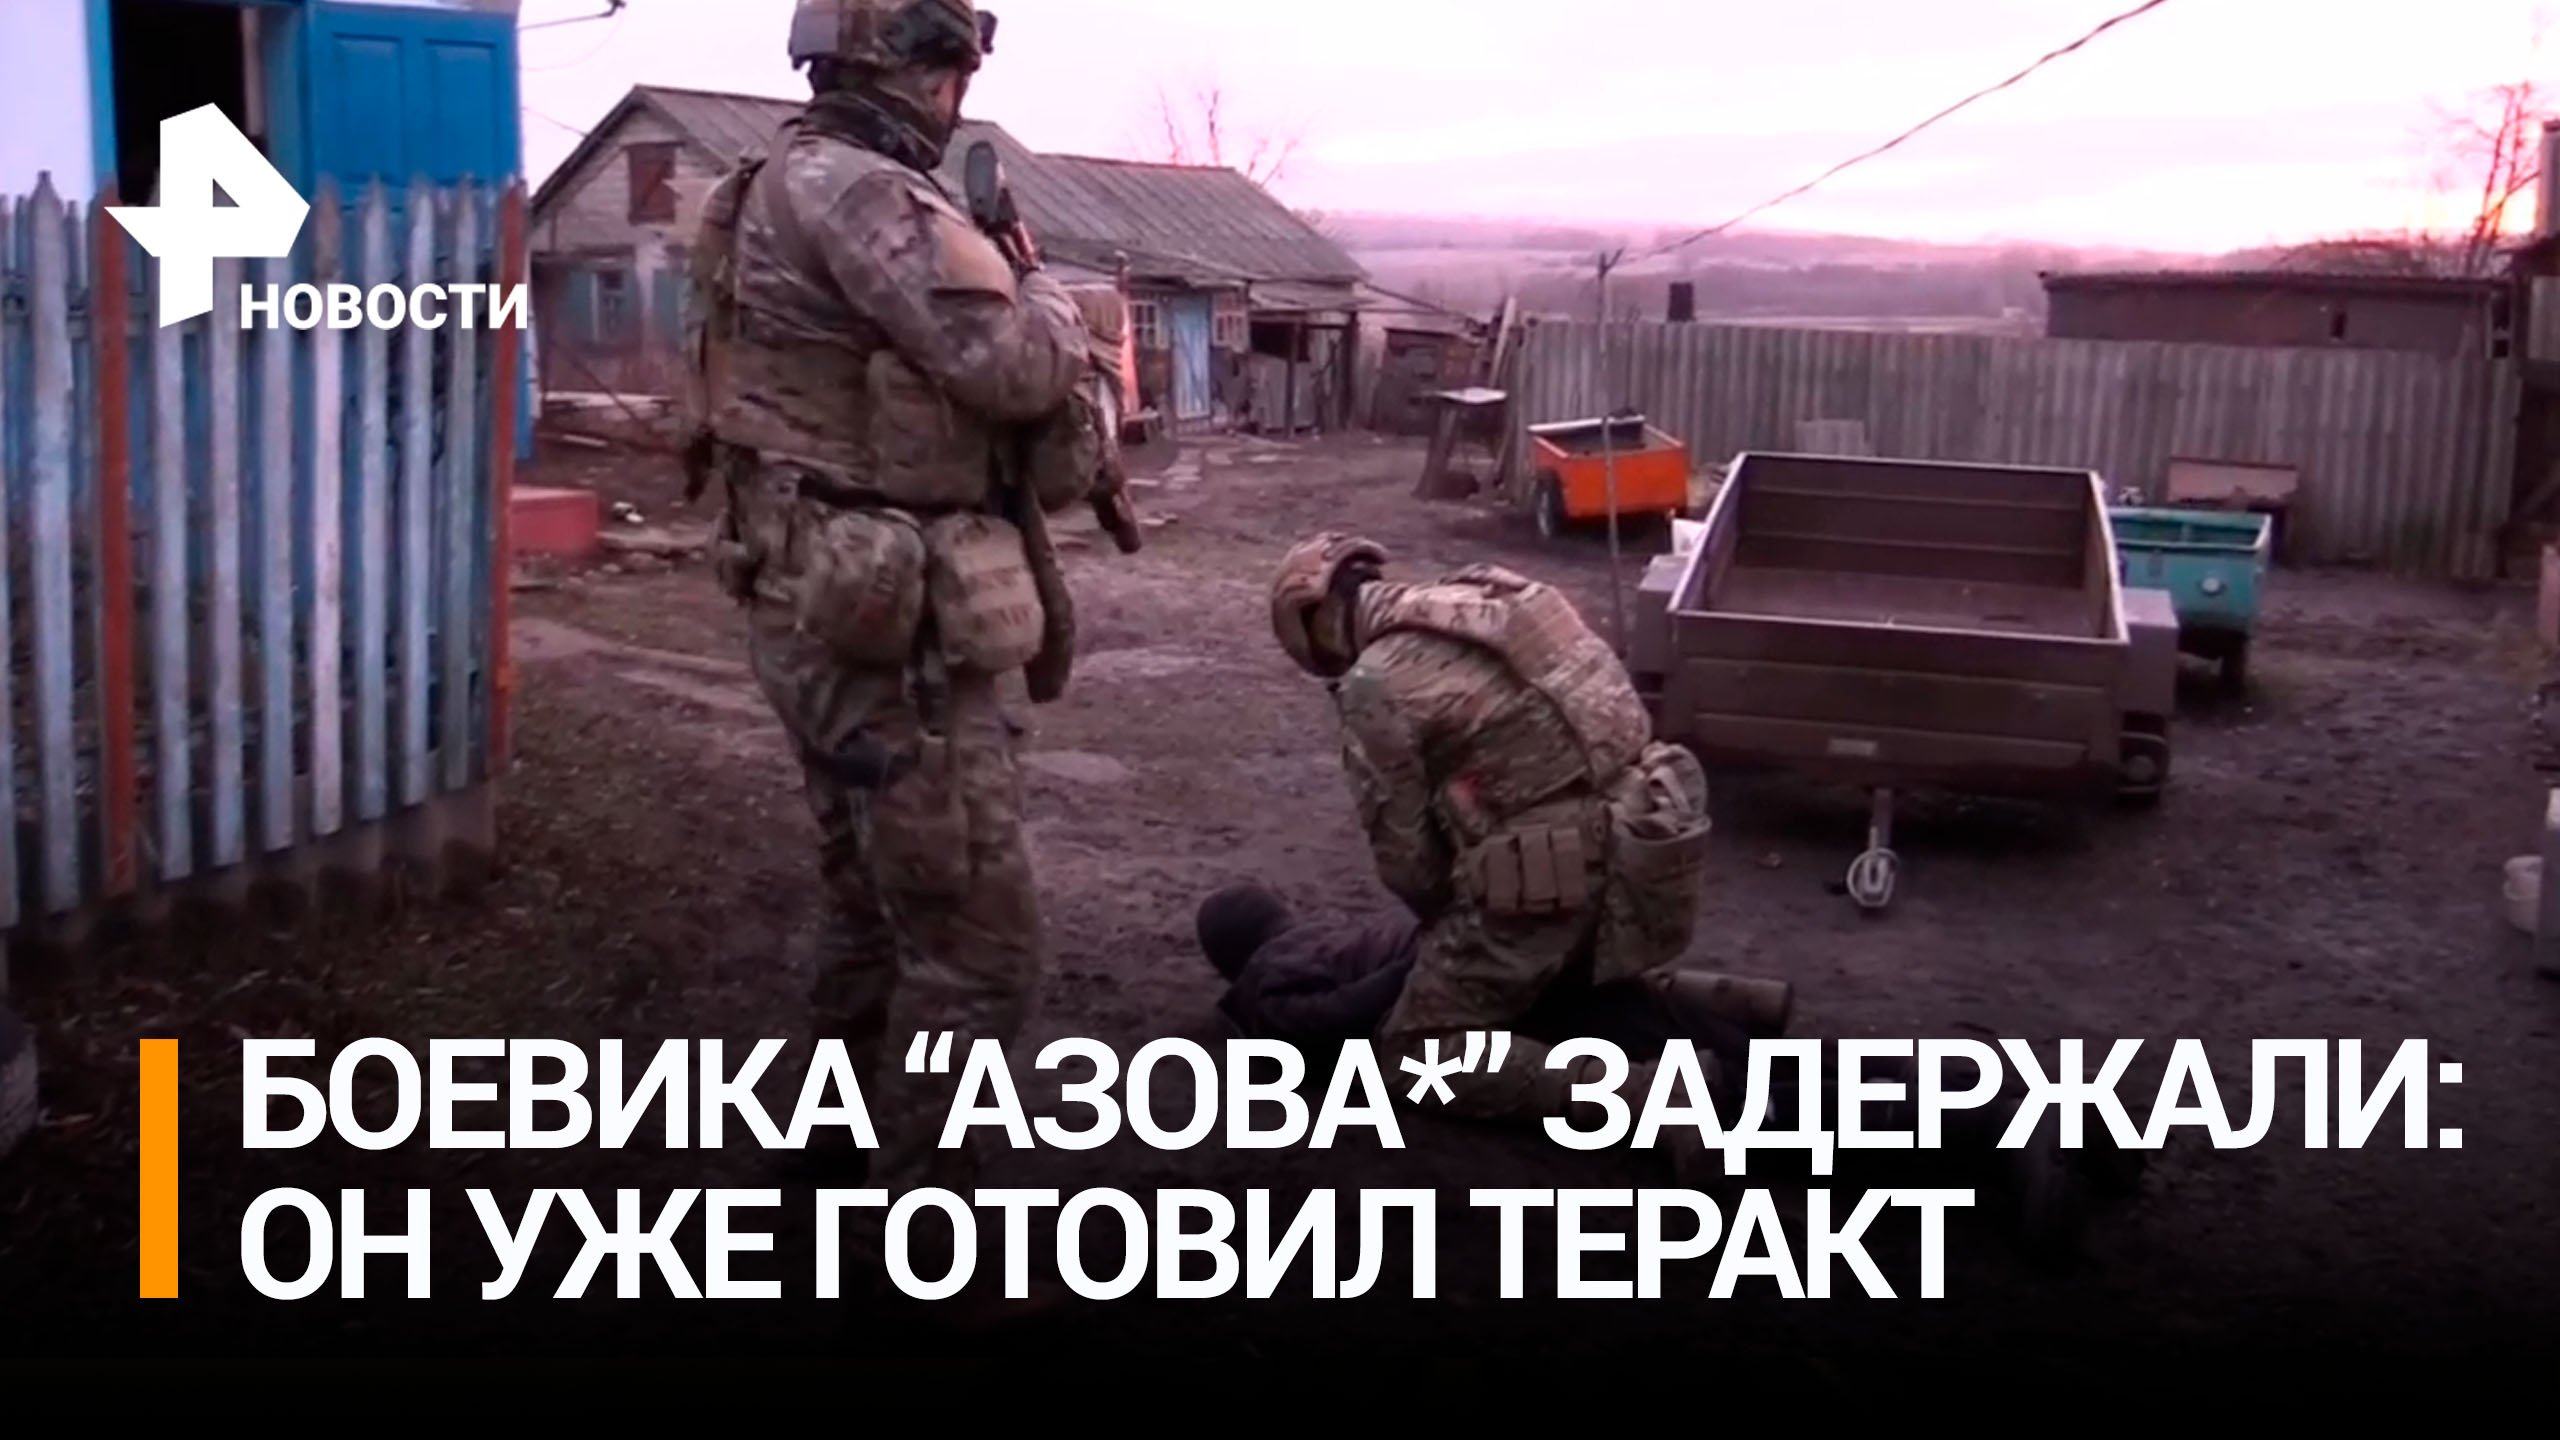 В ЛНР задержали экс-боевика "Азова"*, готовившего теракты / РЕН Новости